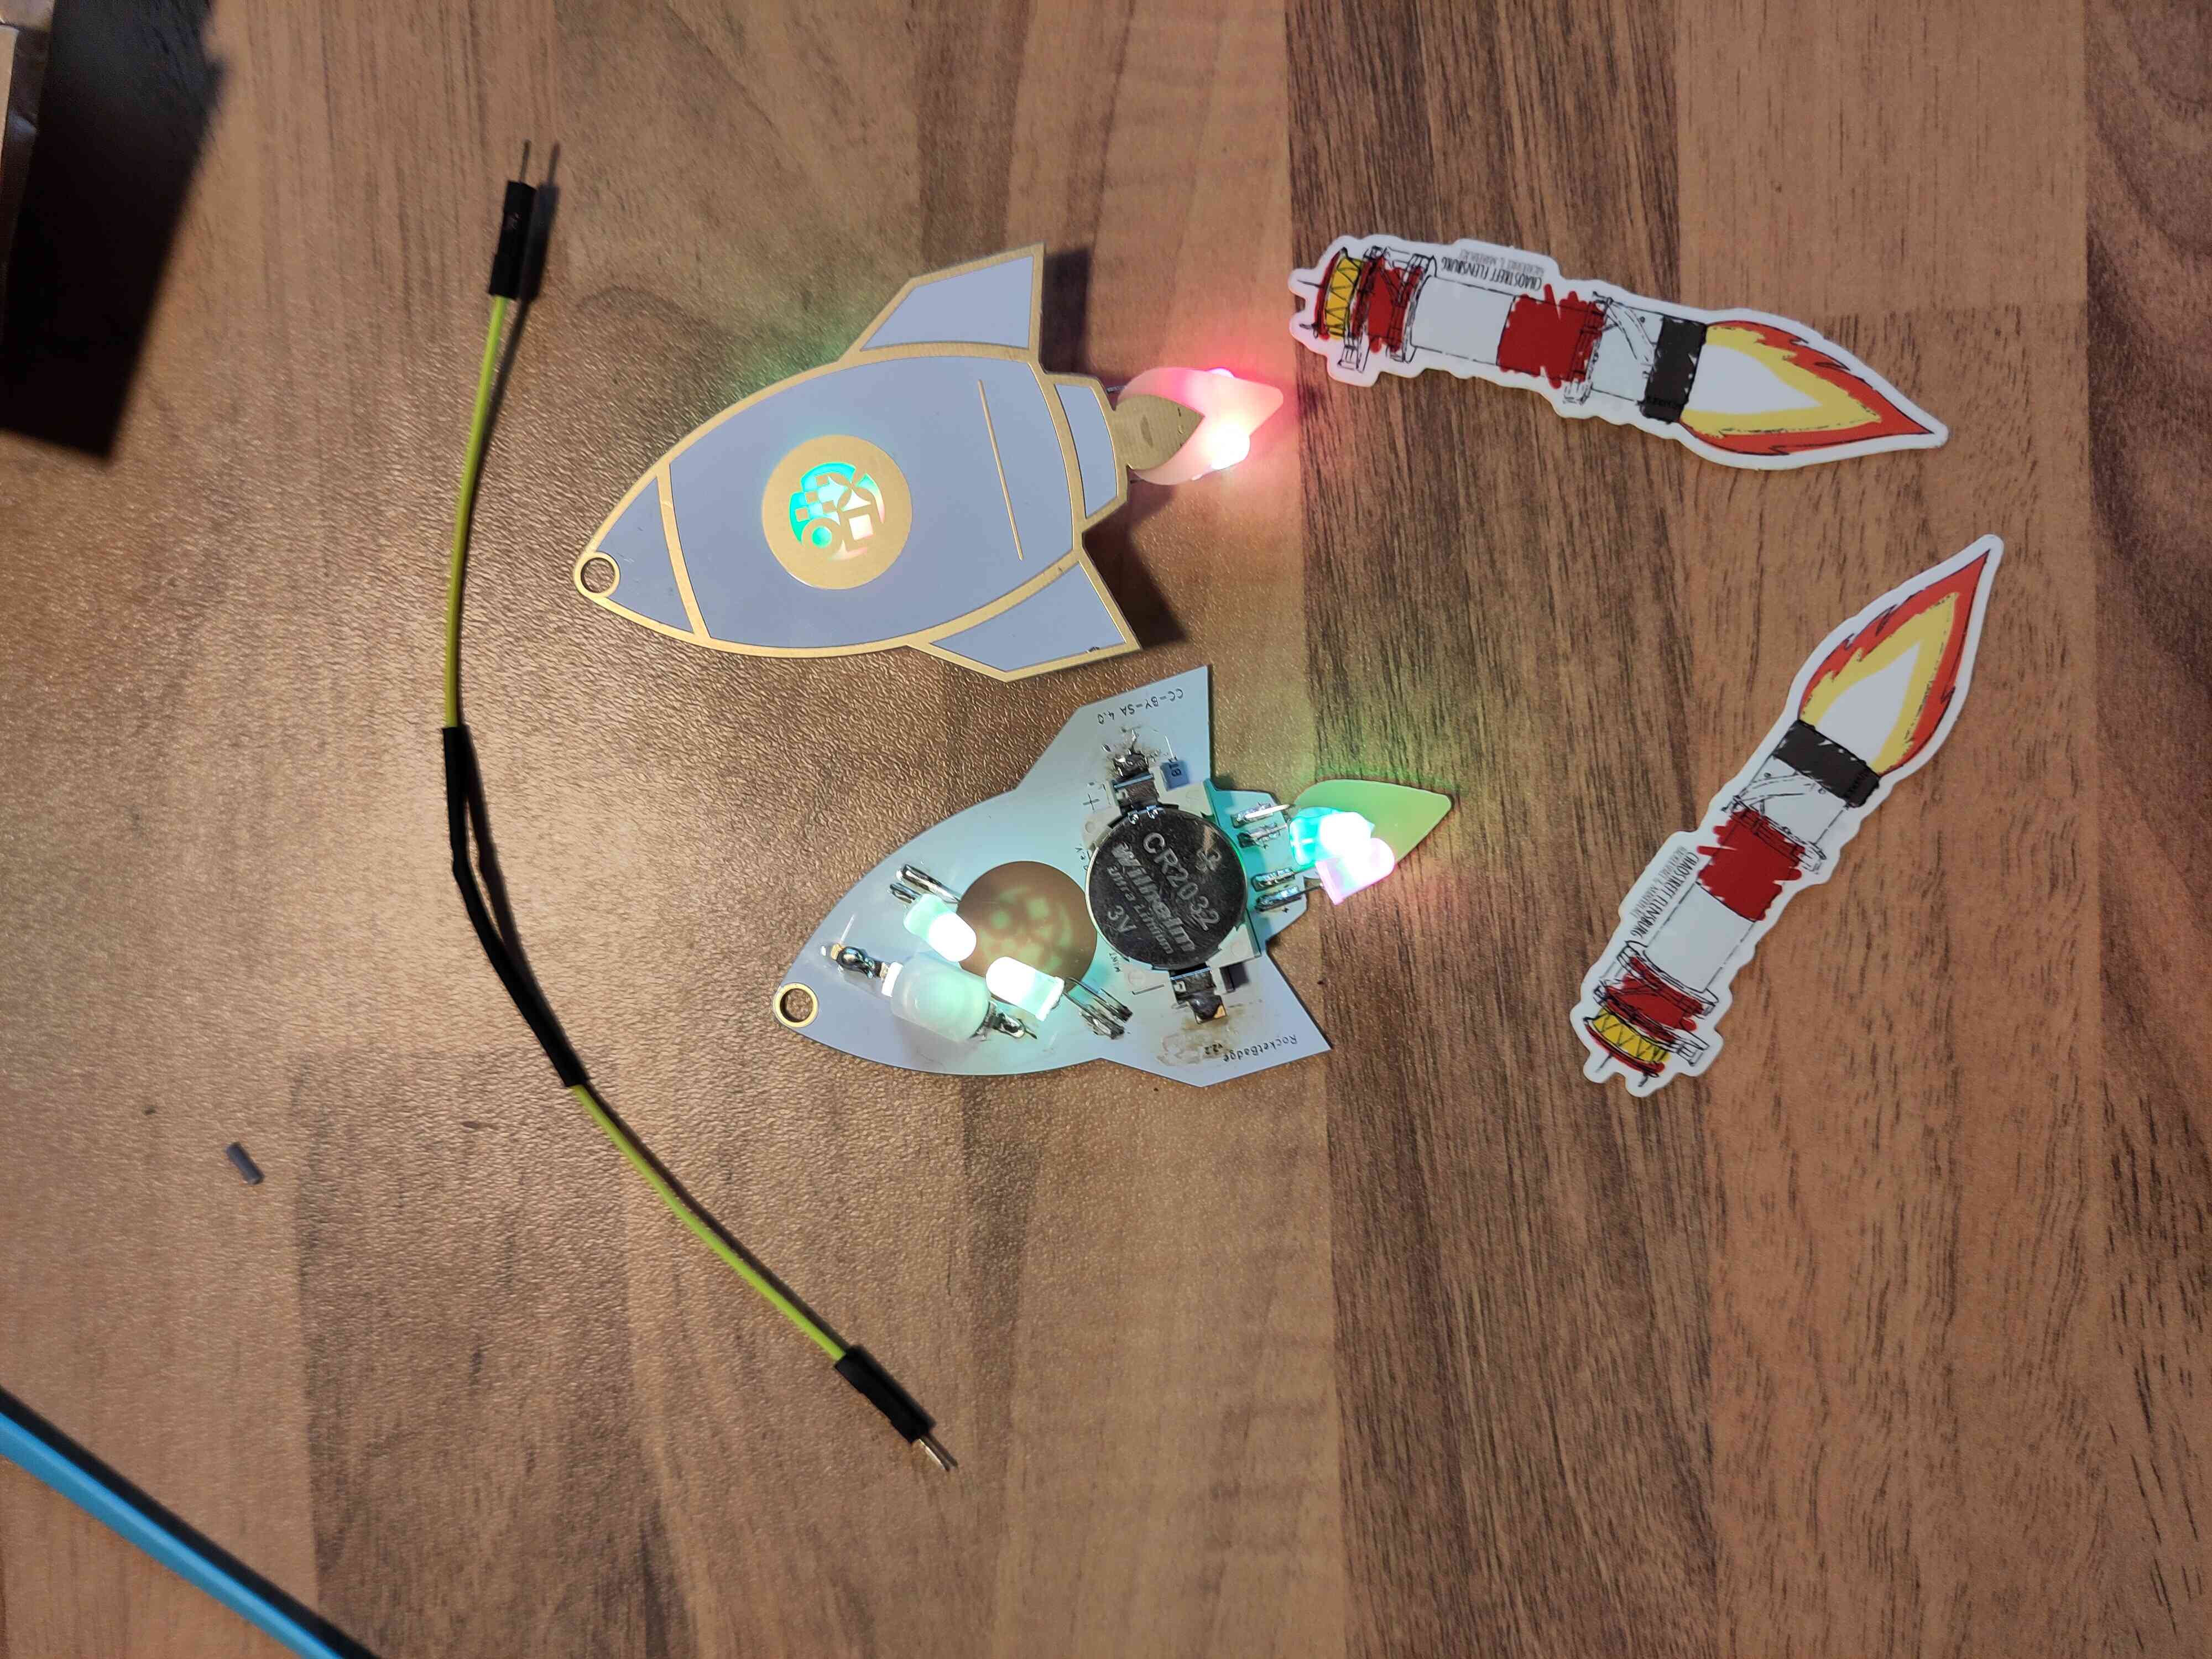 Ein Kabel mit schrumpfschlauch. Zwei Raketen mit leuchtenden LEDs die gelötet sind und zwei Leuchtturm rakeden Sticker vom ctfl